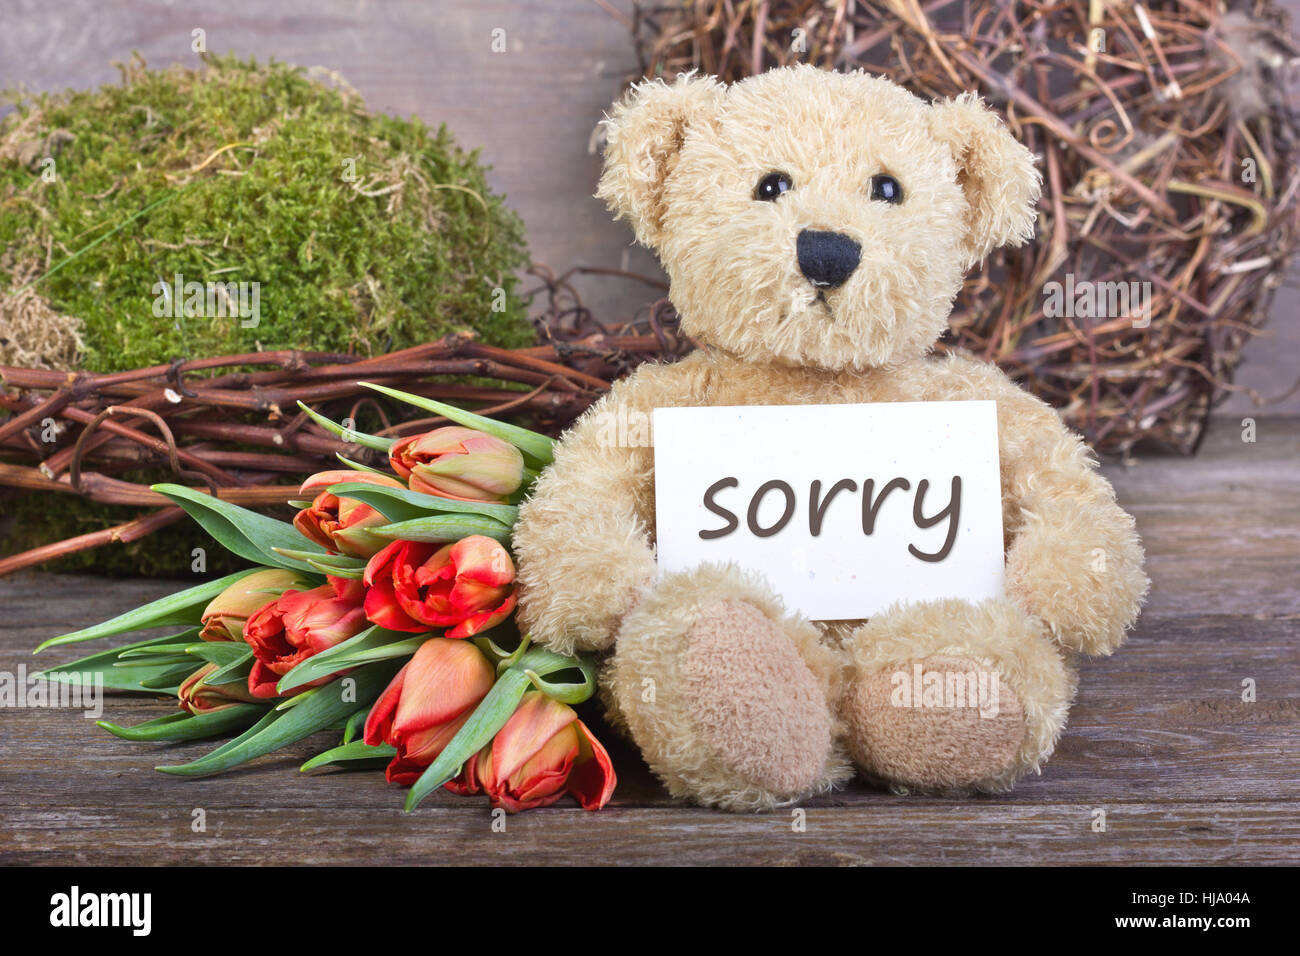 Blume, Blumen, Pflanze, Teddy, Kuscheltier, entschuldigen Sie, entschuldigen,  Briefe, Zettel Stockfotografie - Alamy